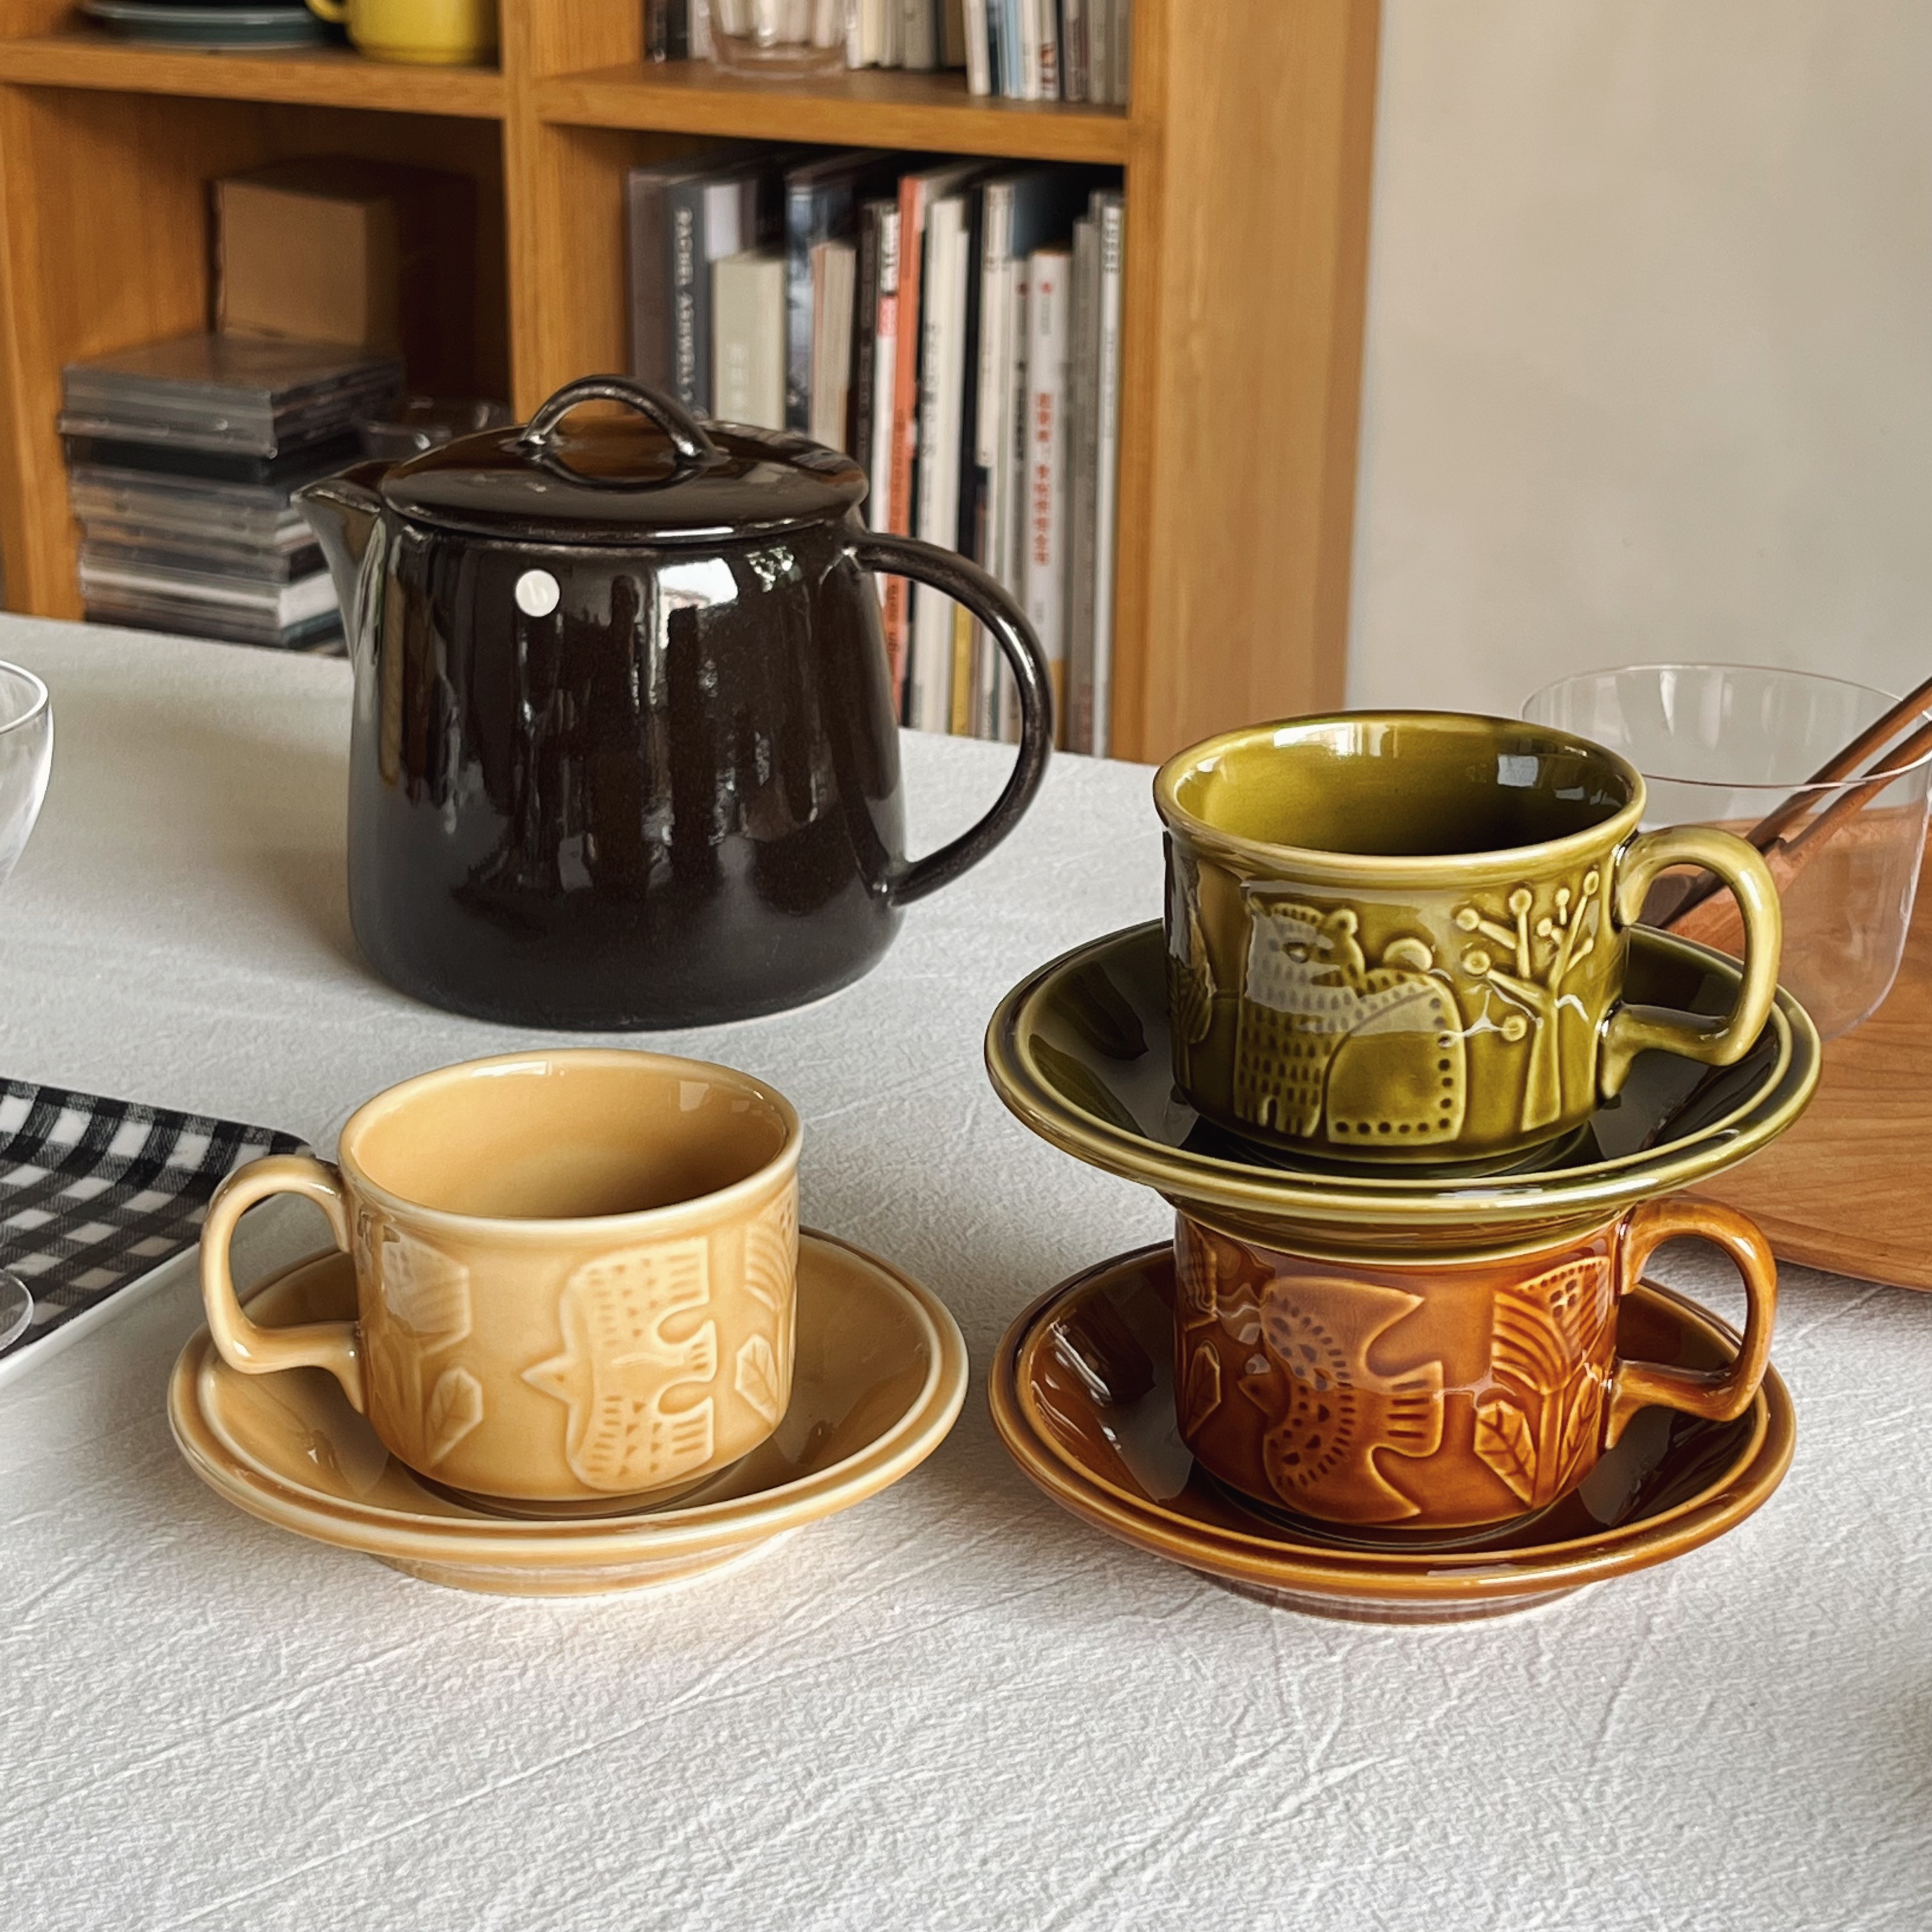 北歐風陶瓷咖啡杯碟組 貓熊鳥圖案 180毫升卡布奇諾杯